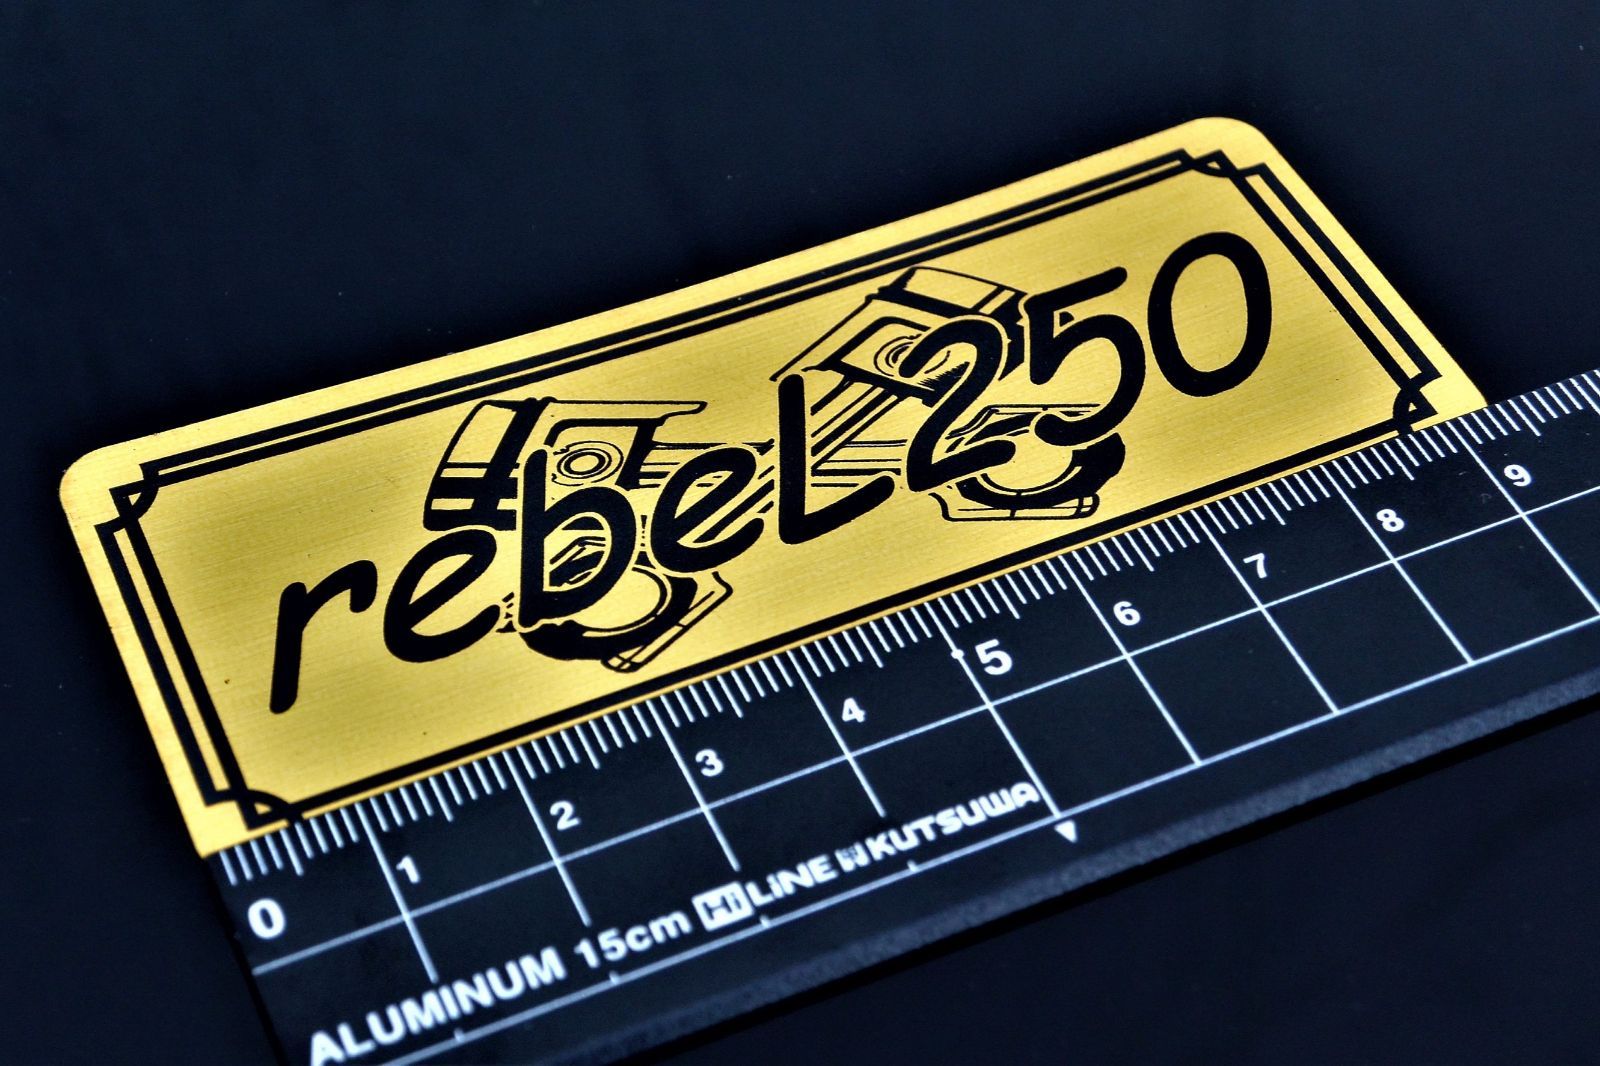 B-53-1 rebel250 金/黒 オリジナル ステッカー ホンダ REBEL250 レブル250 サイドカバー カウル カスタム 外装 タンク  スイングアーム 等に - メルカリ 500円